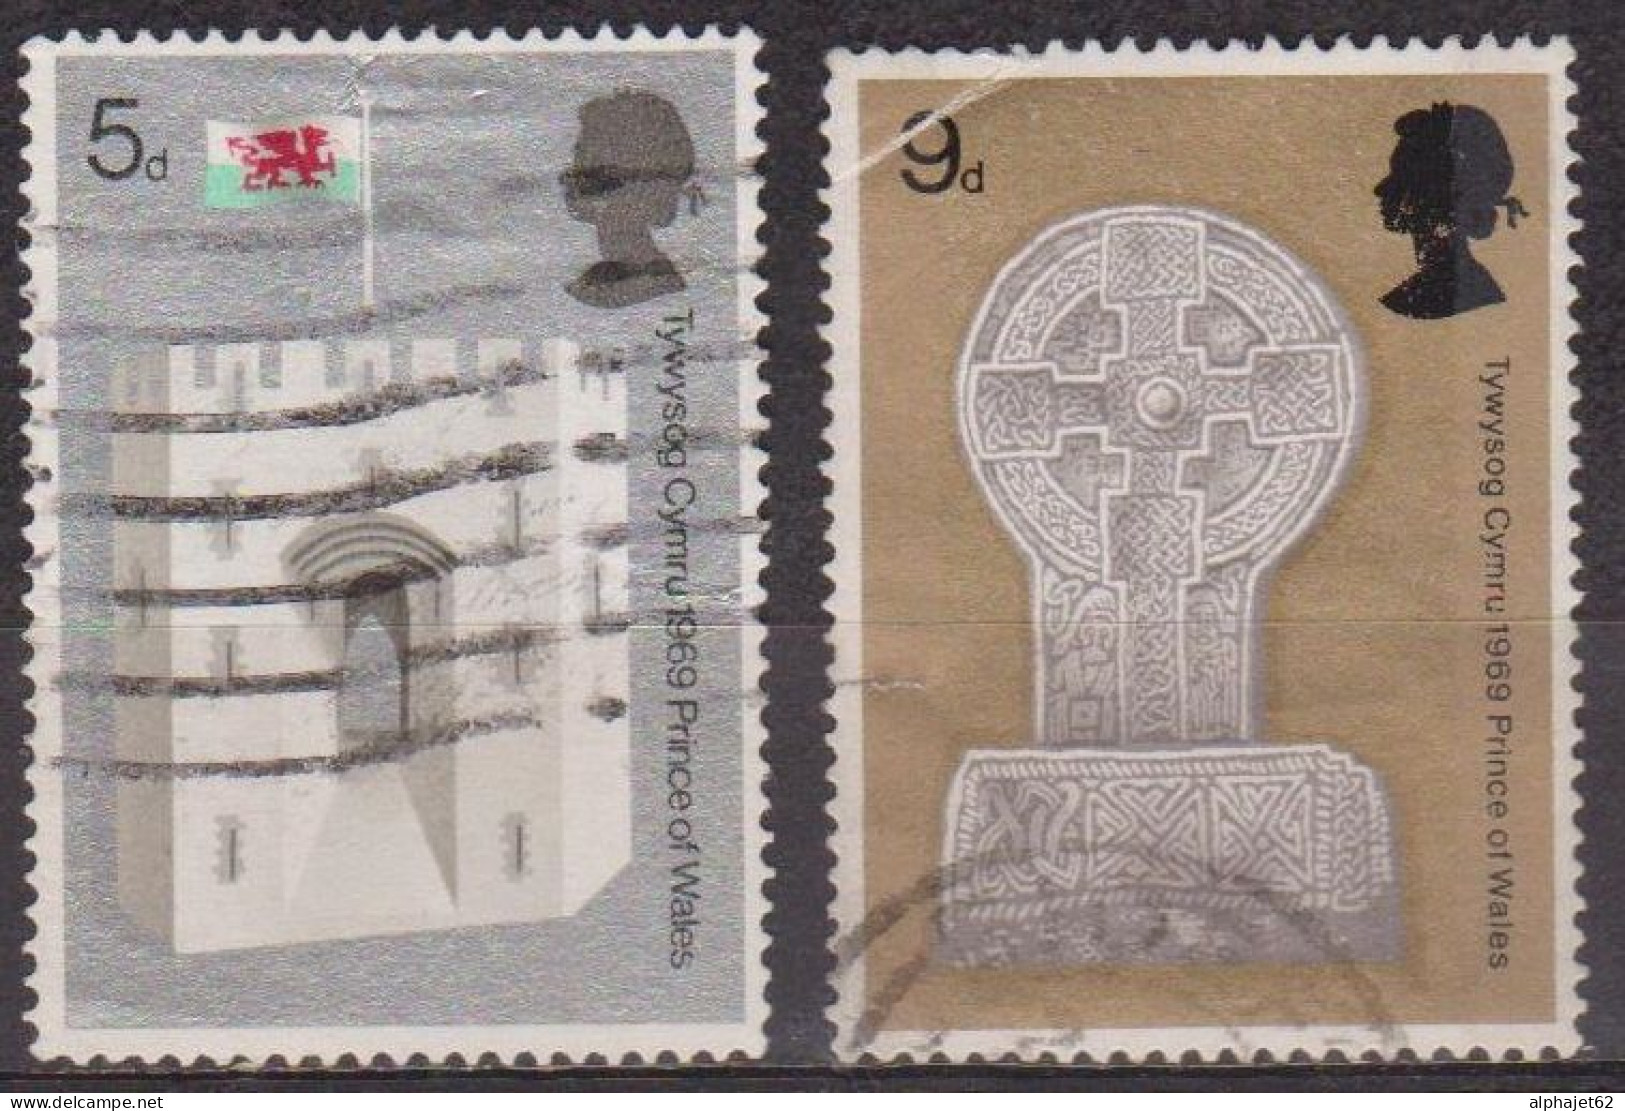 Pays De Galles, Chateau De Caernarvon- GRANDE BRETAGNE - Croix Celtique, Porte Du Roi - N° 571- 572 - 1969 - Used Stamps